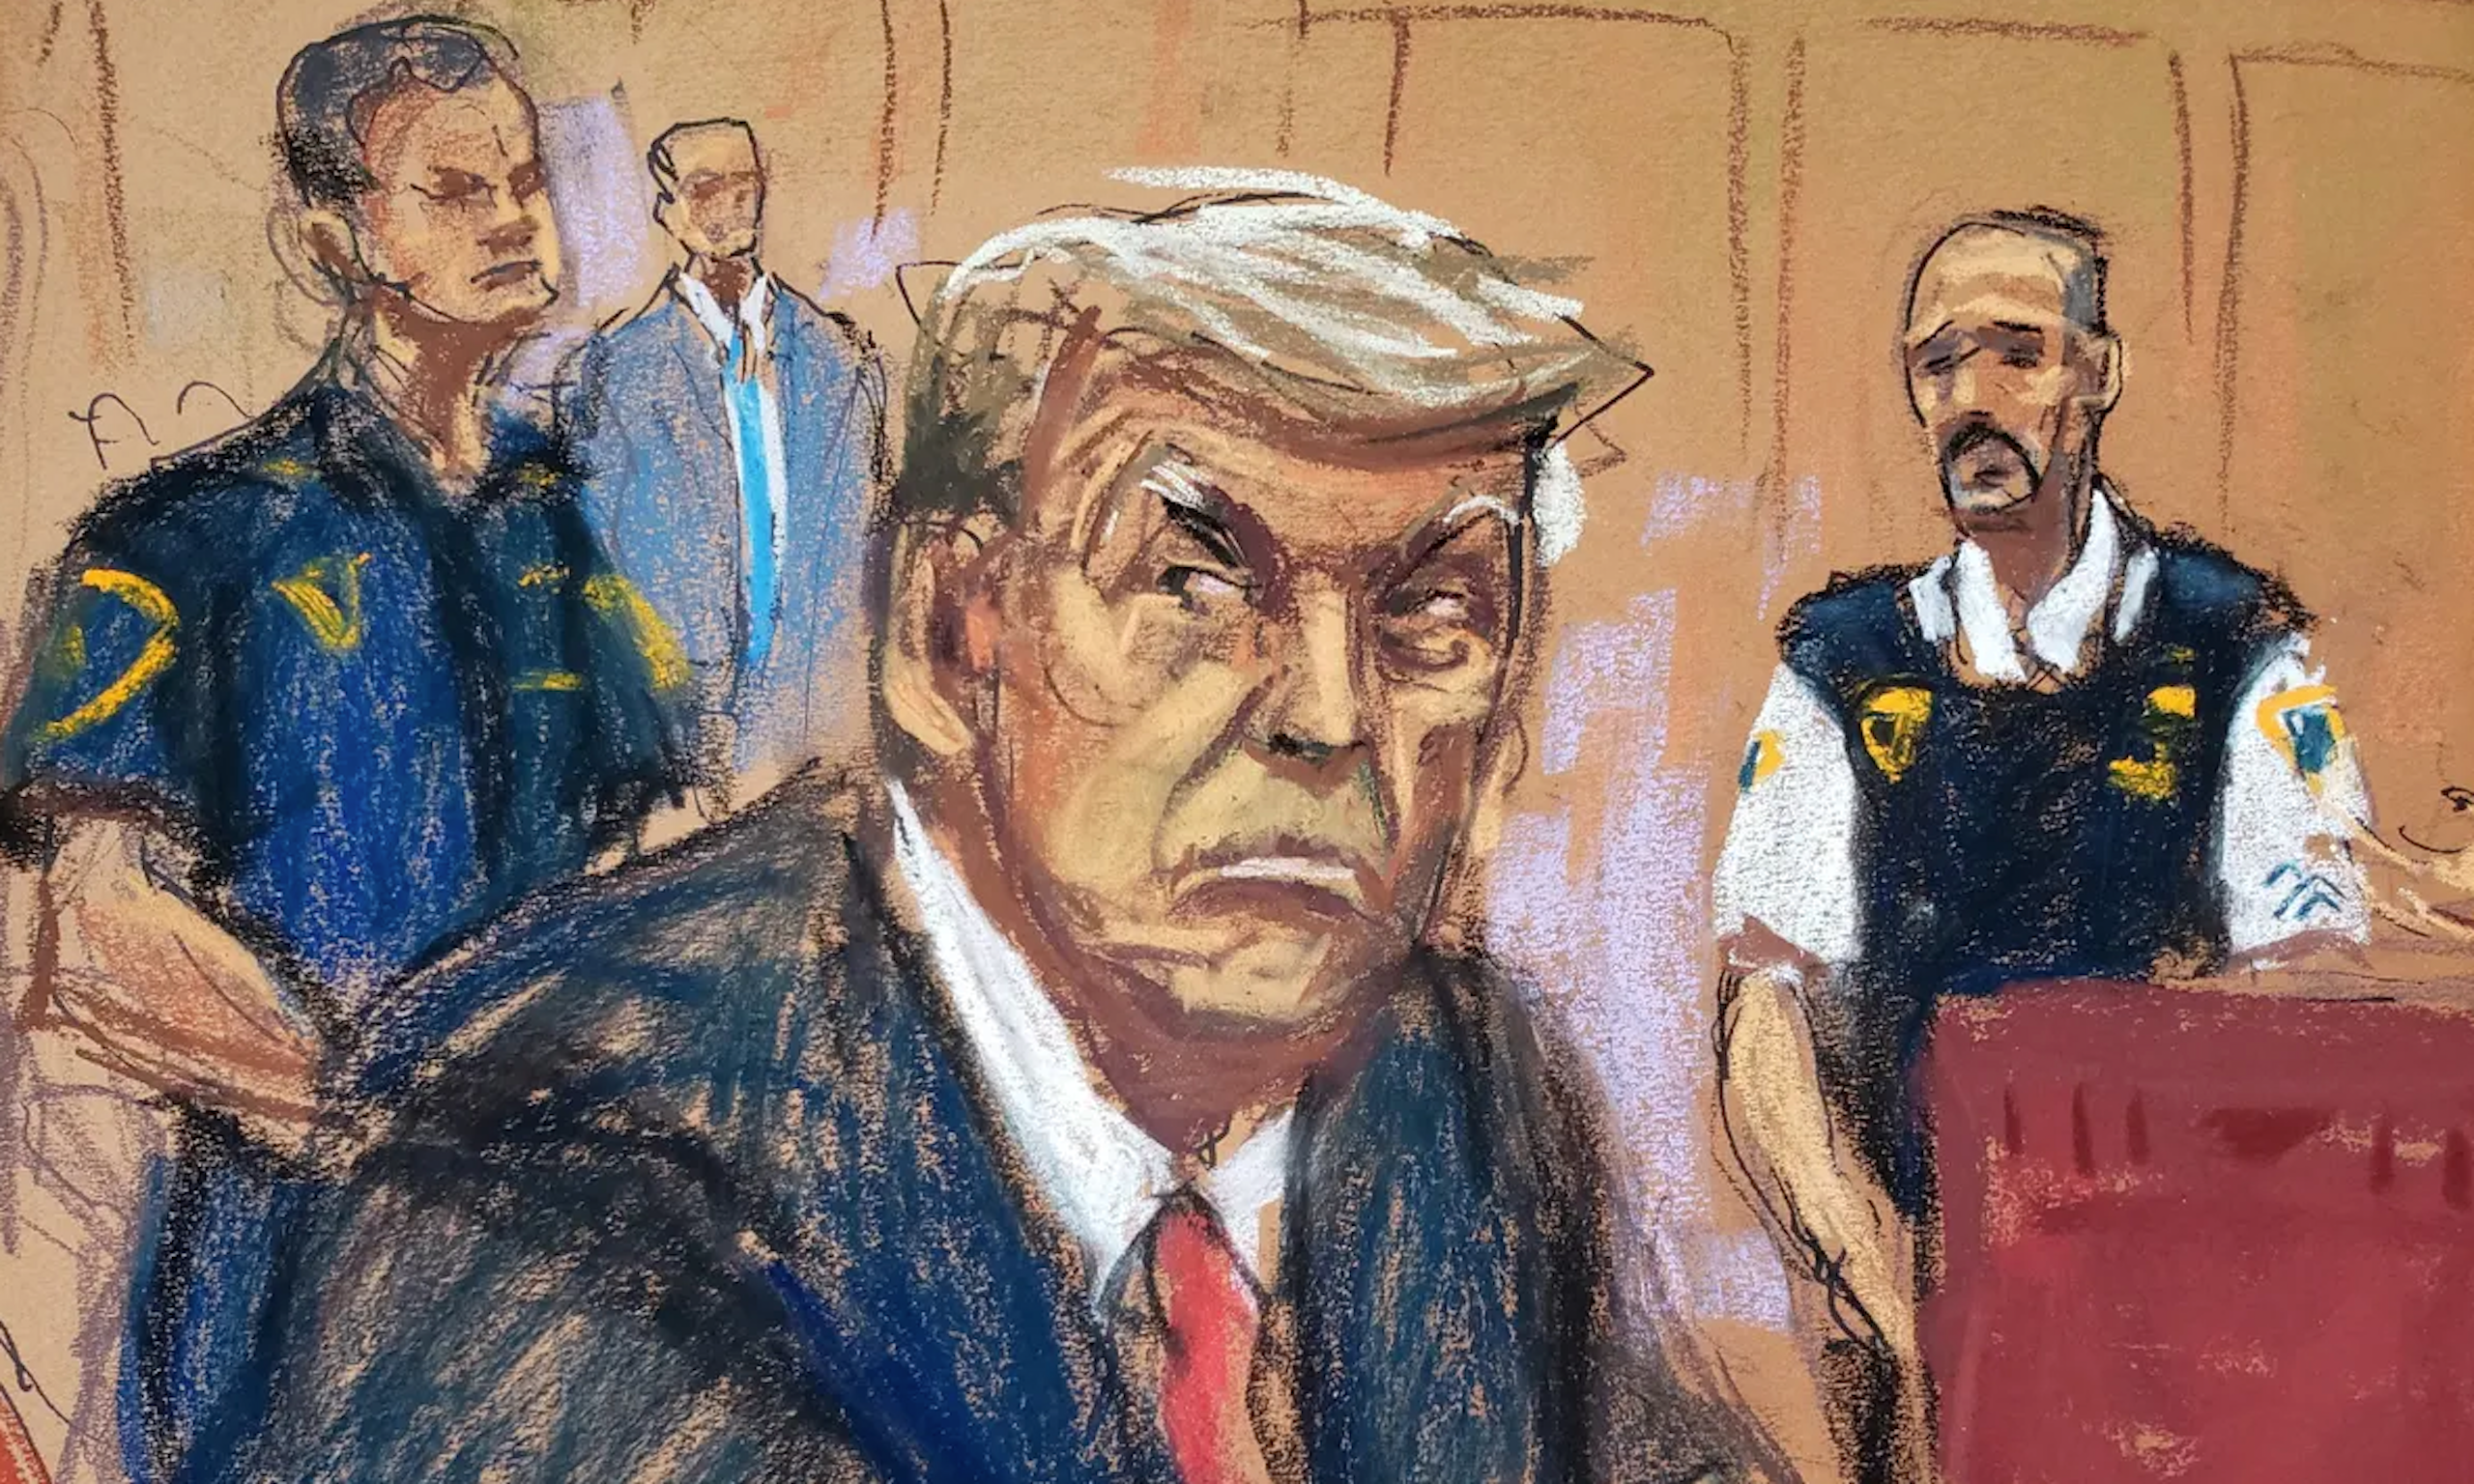 Sketch of man looking glum.